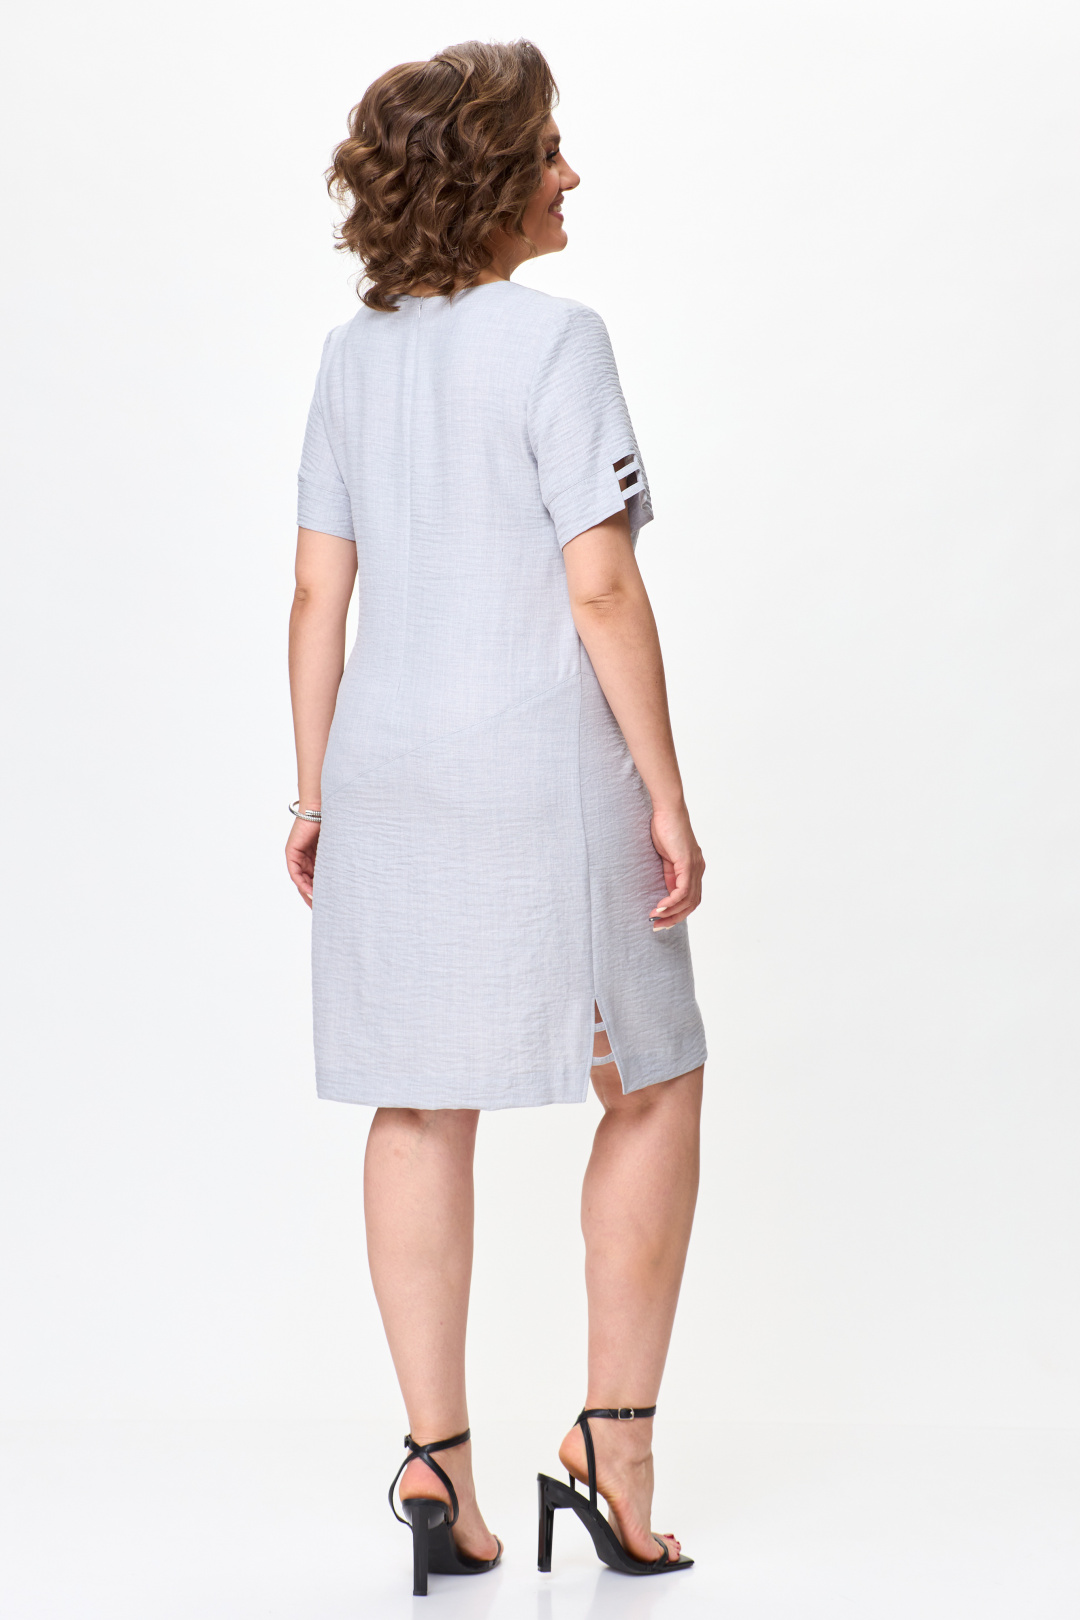 Платье Мода-Версаль 2469 бежевый